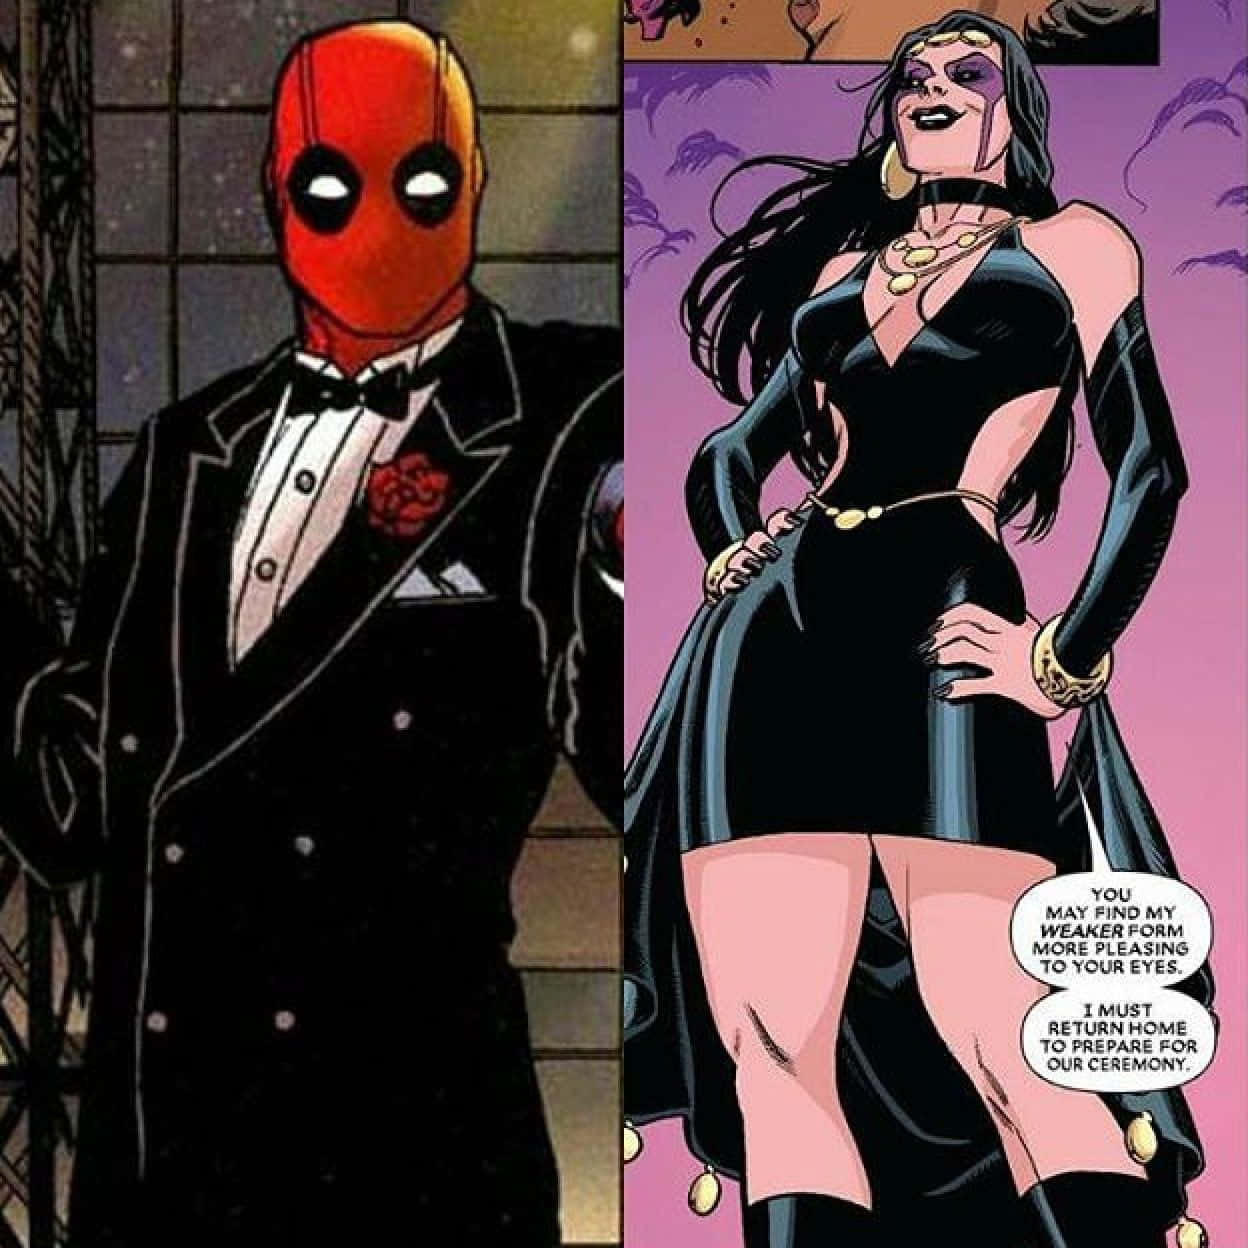 A romantic moment between Deadpool and Vanessa Wallpaper